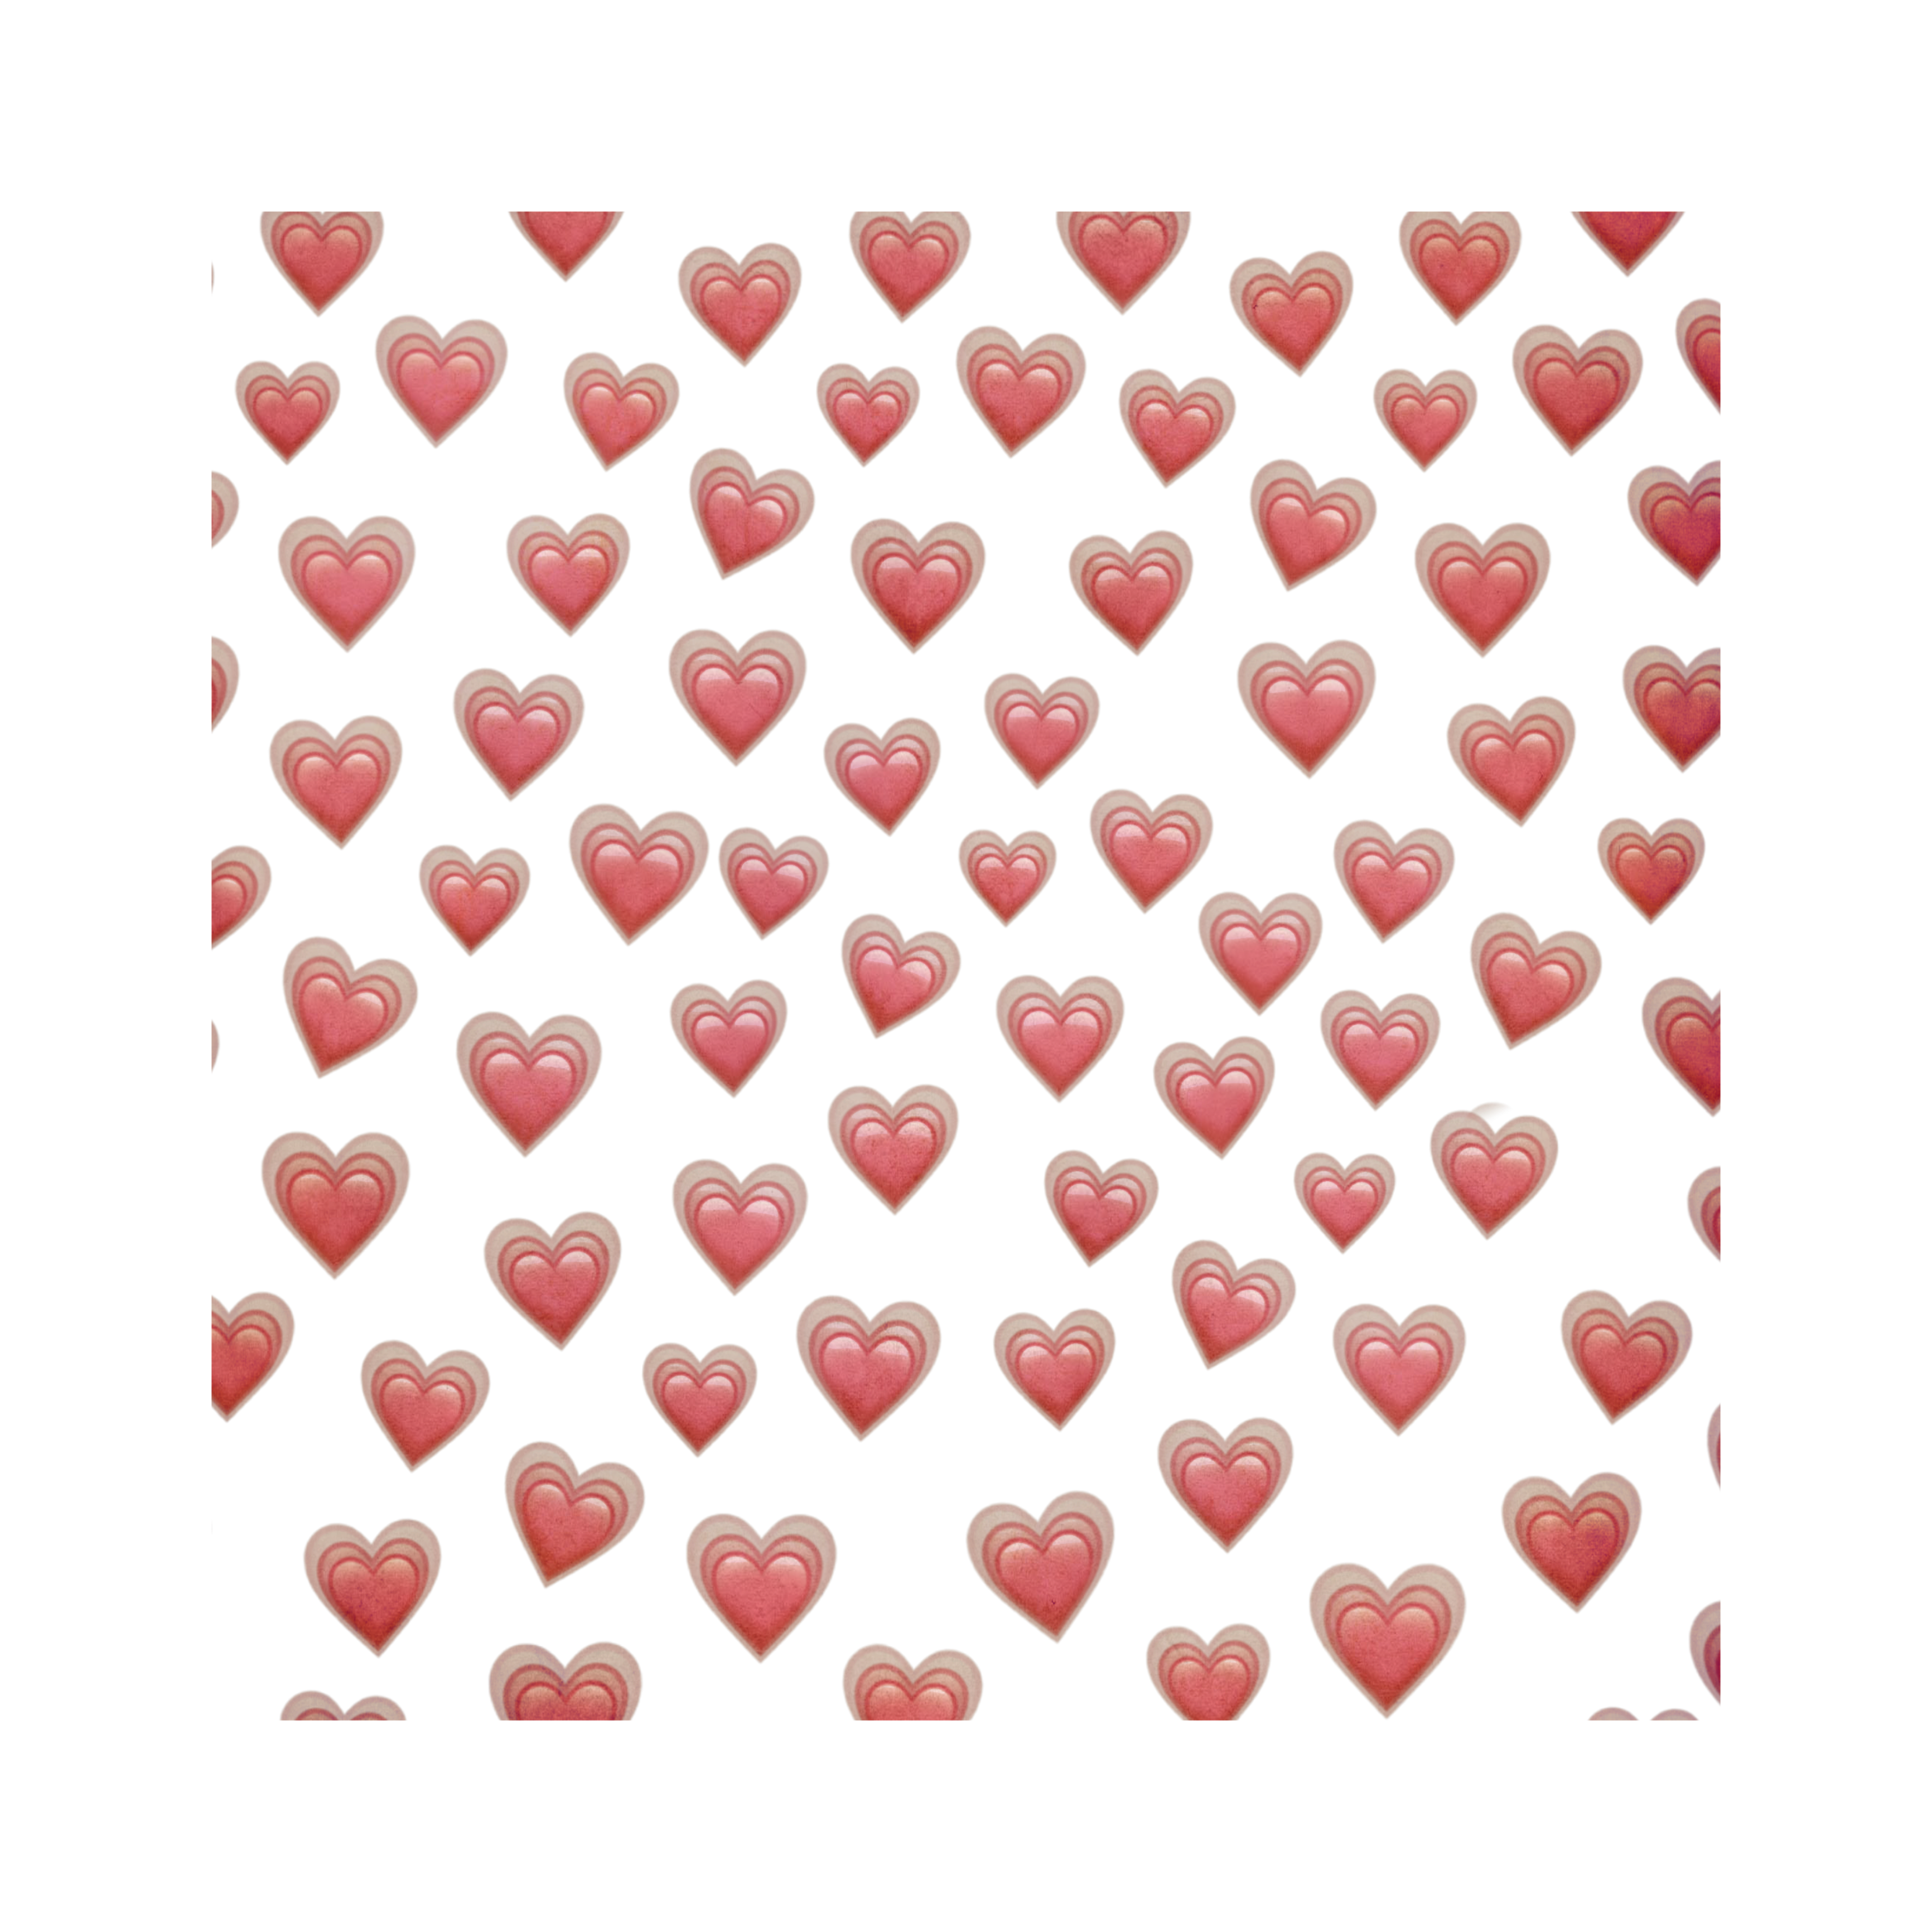 Как сделать анимированные сердечко из сердечек в телеграмме фото 116